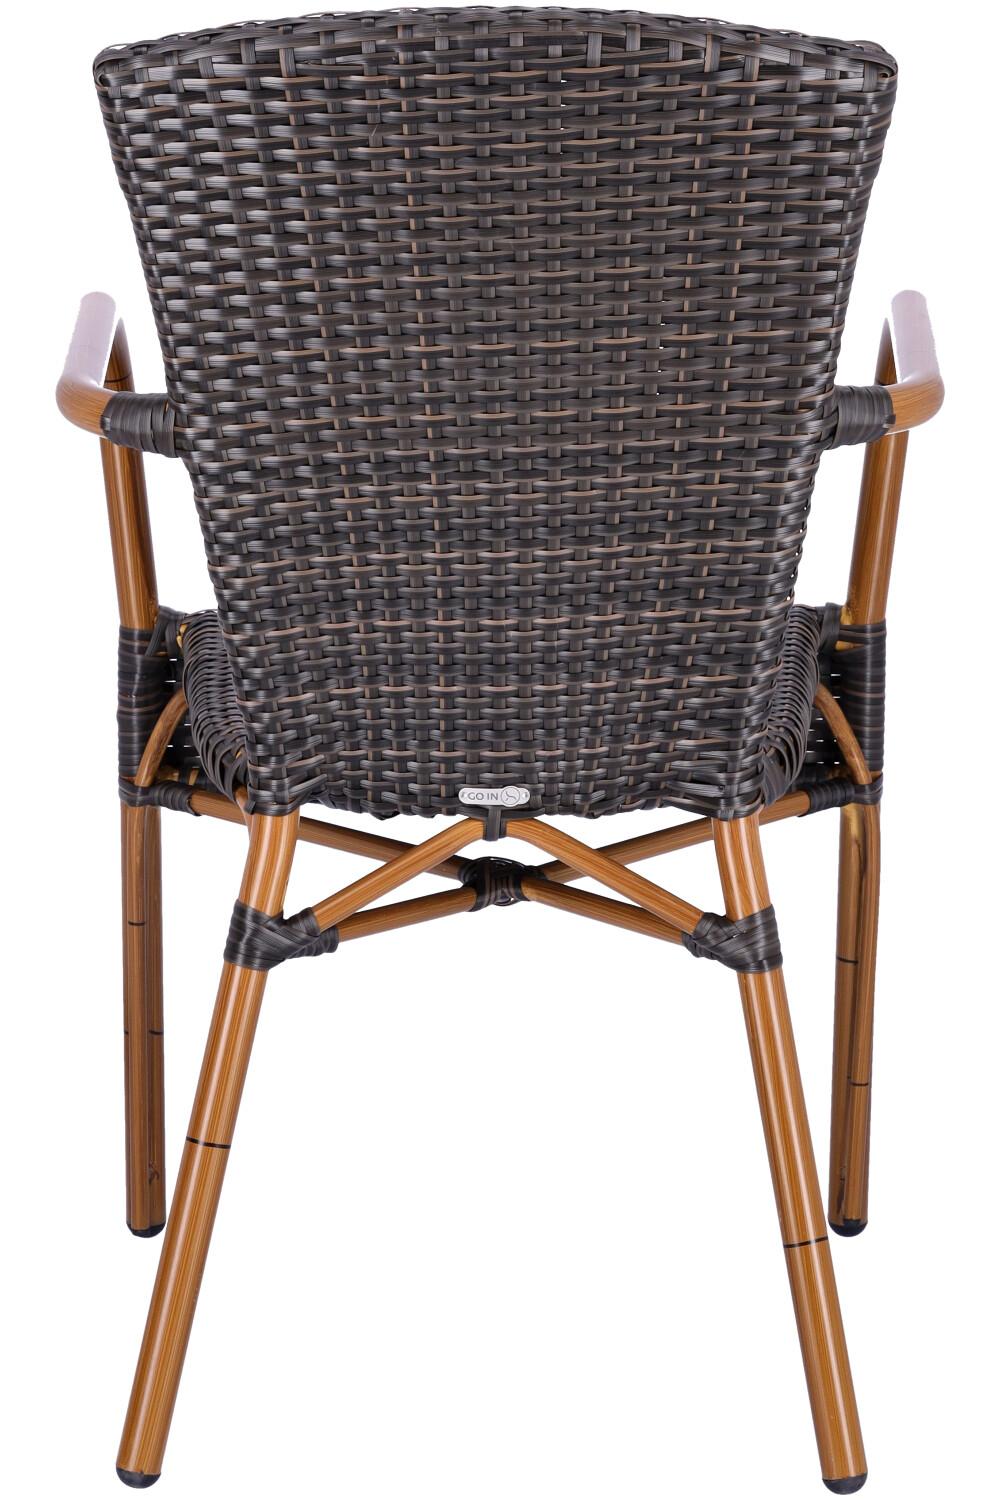 Abbildung arm chair Malena Rückansicht